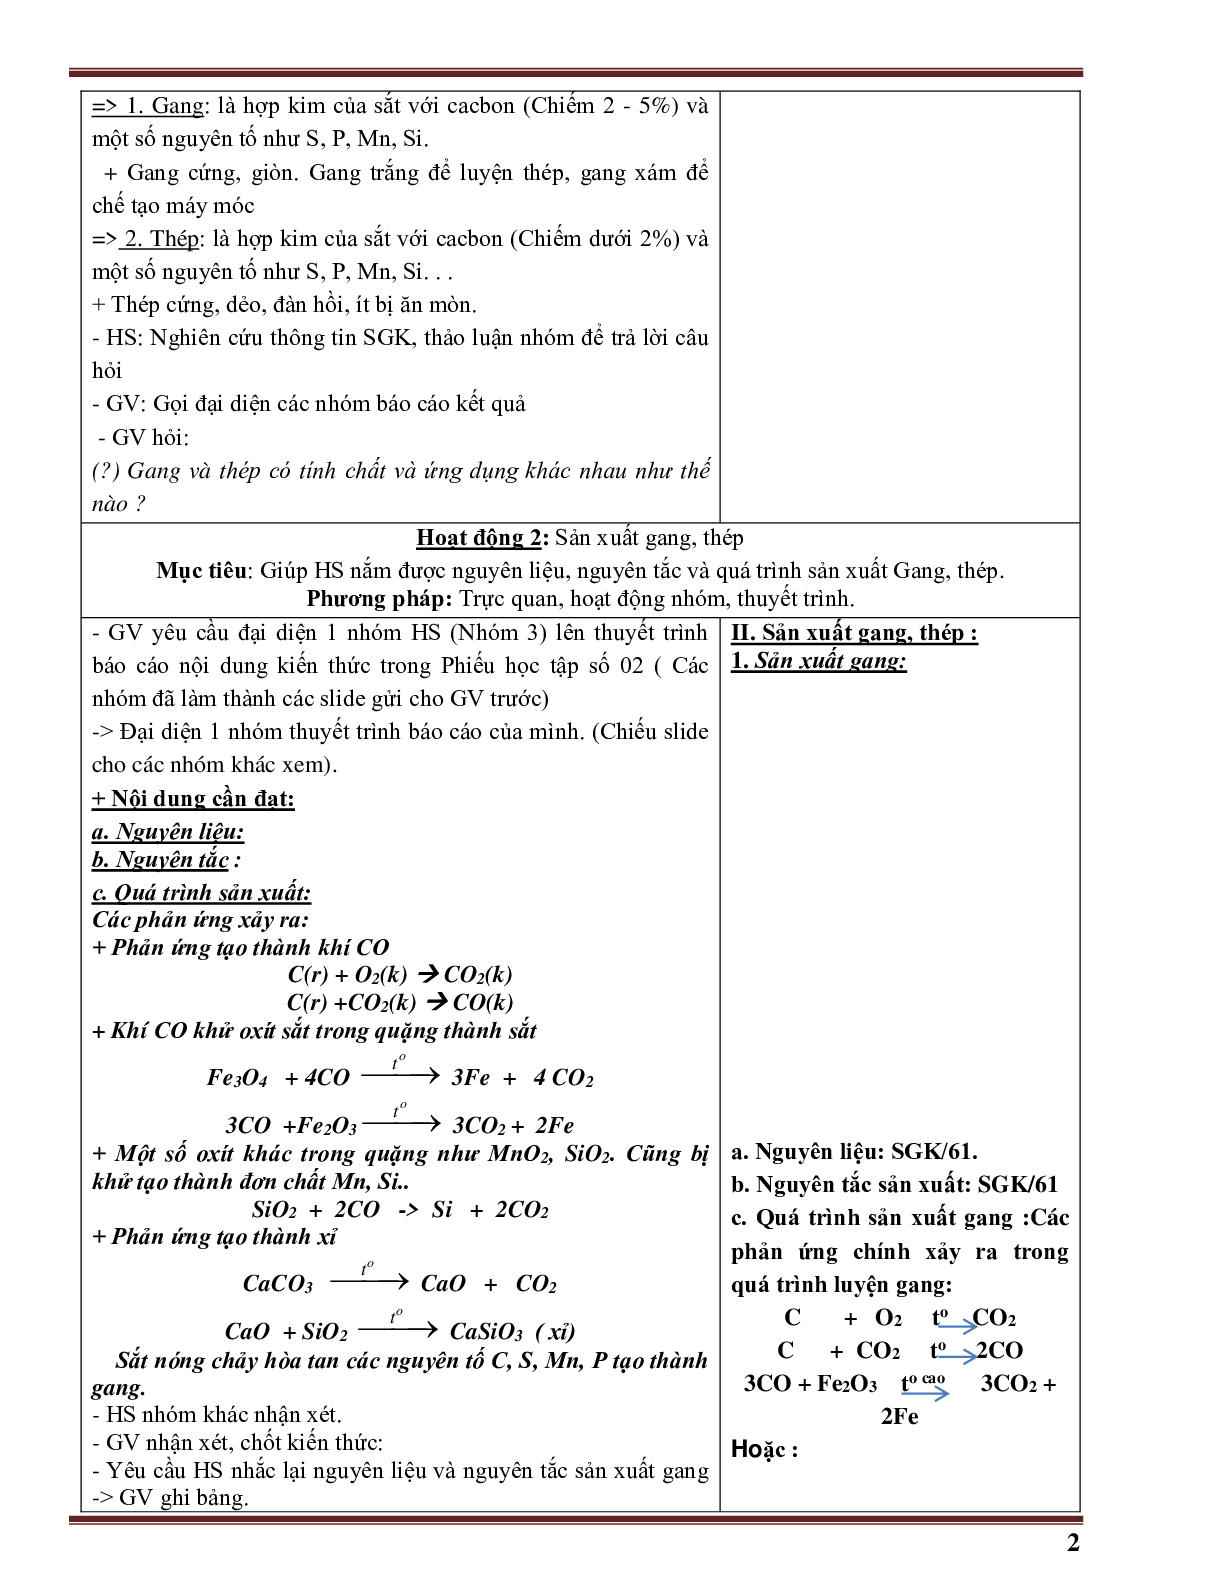 Giáo án Hóa học 9 bài 20 Hợp kim sắt- Gang, thép mới nhất (trang 2)